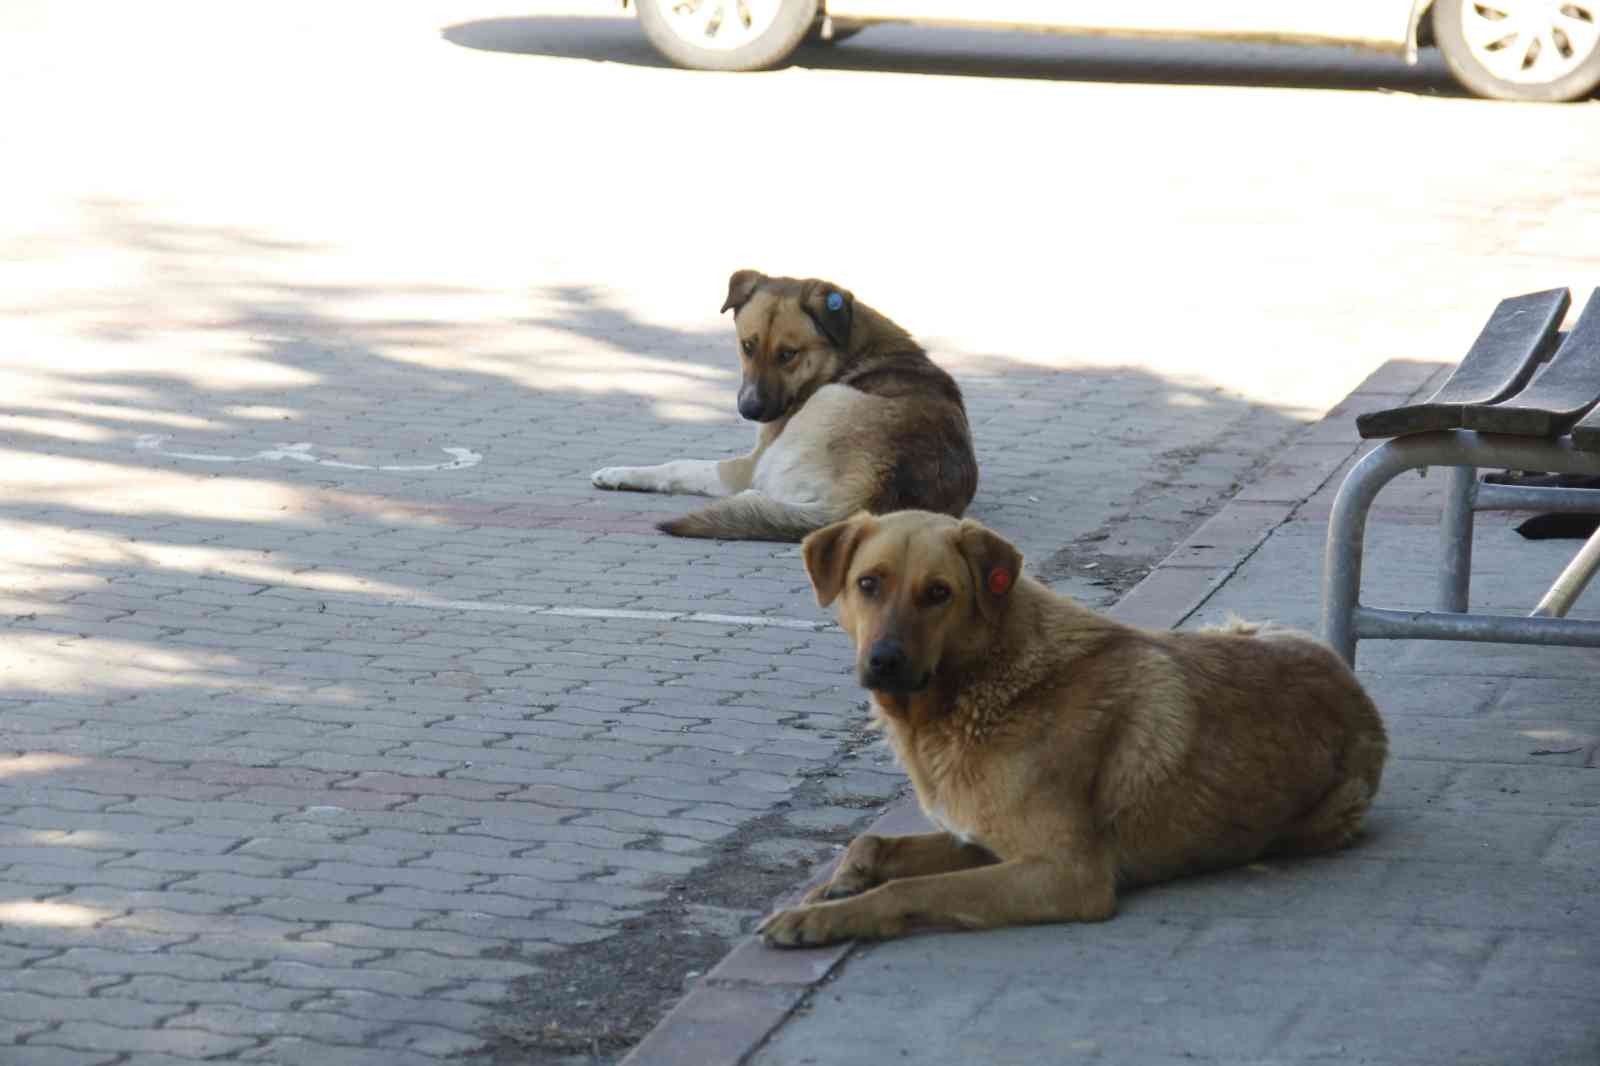 Kocaeli Üniversitesi’nde başıboş köpek sorunu gün geçtikte büyüyor. Köpeklerin saldırısına uğradıklarını söyleyen öğrenciler, hem köpeklerin hem ...